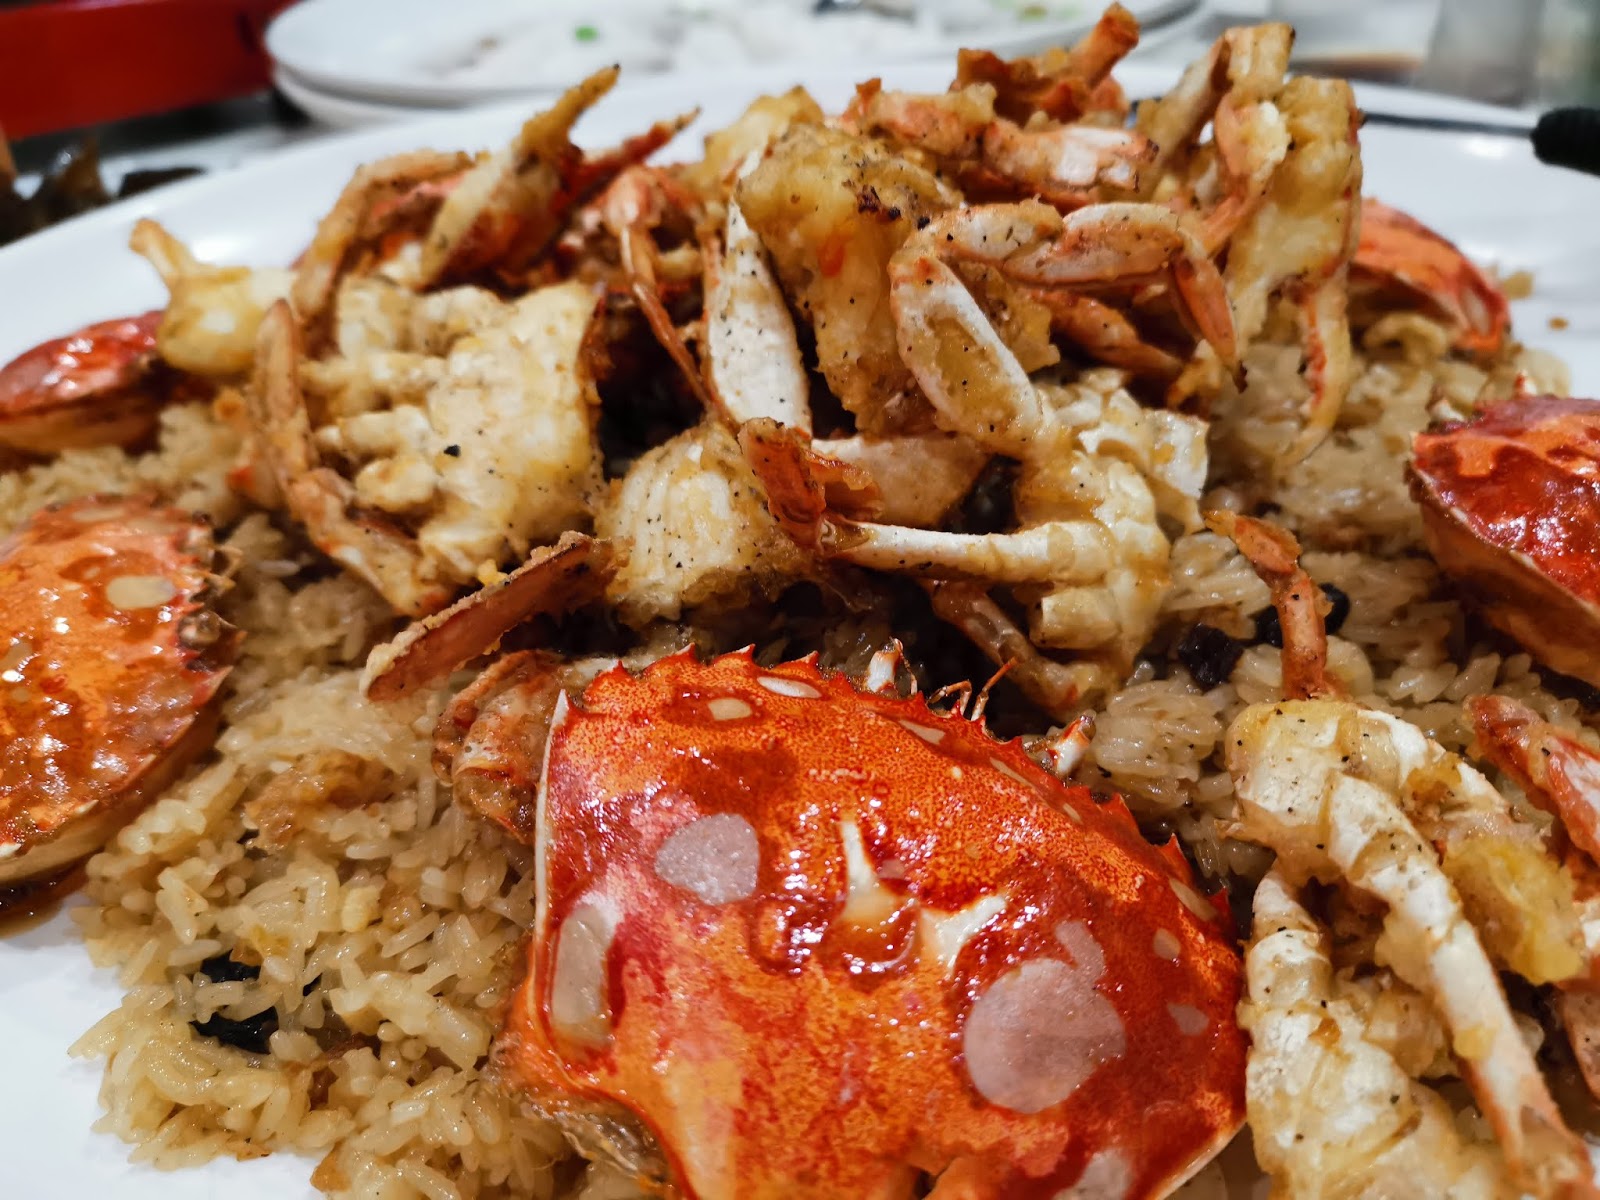 基隆港海產樓螃蟹油飯